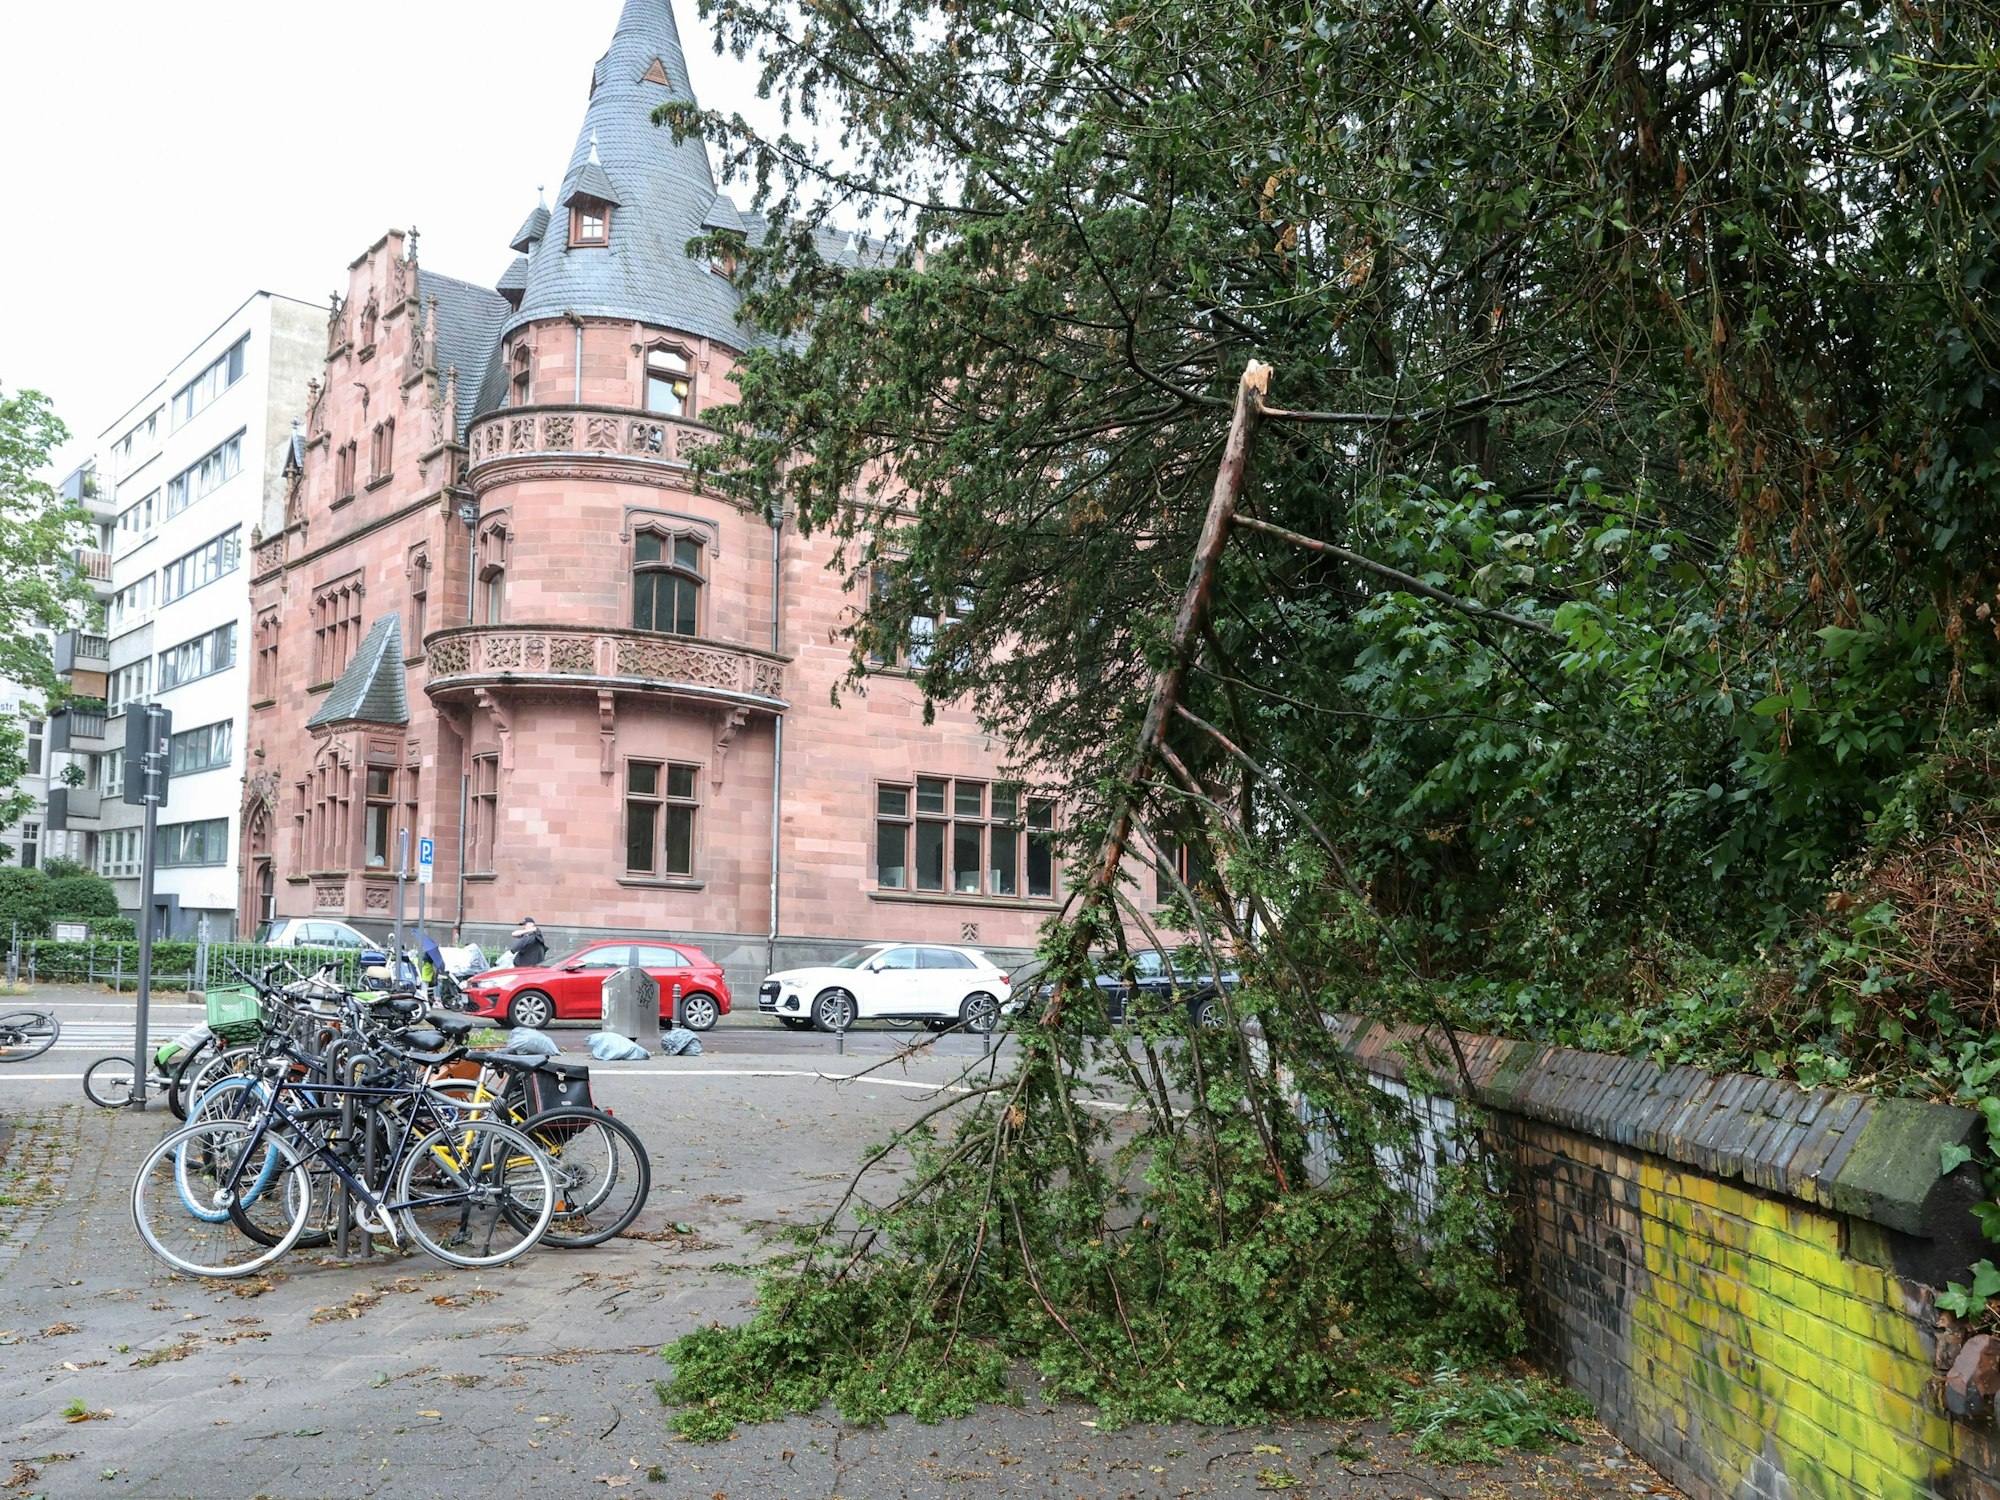 Gewitterschäden im Kölner Stadtpark nach dem schweren Gewitter am Montag.

